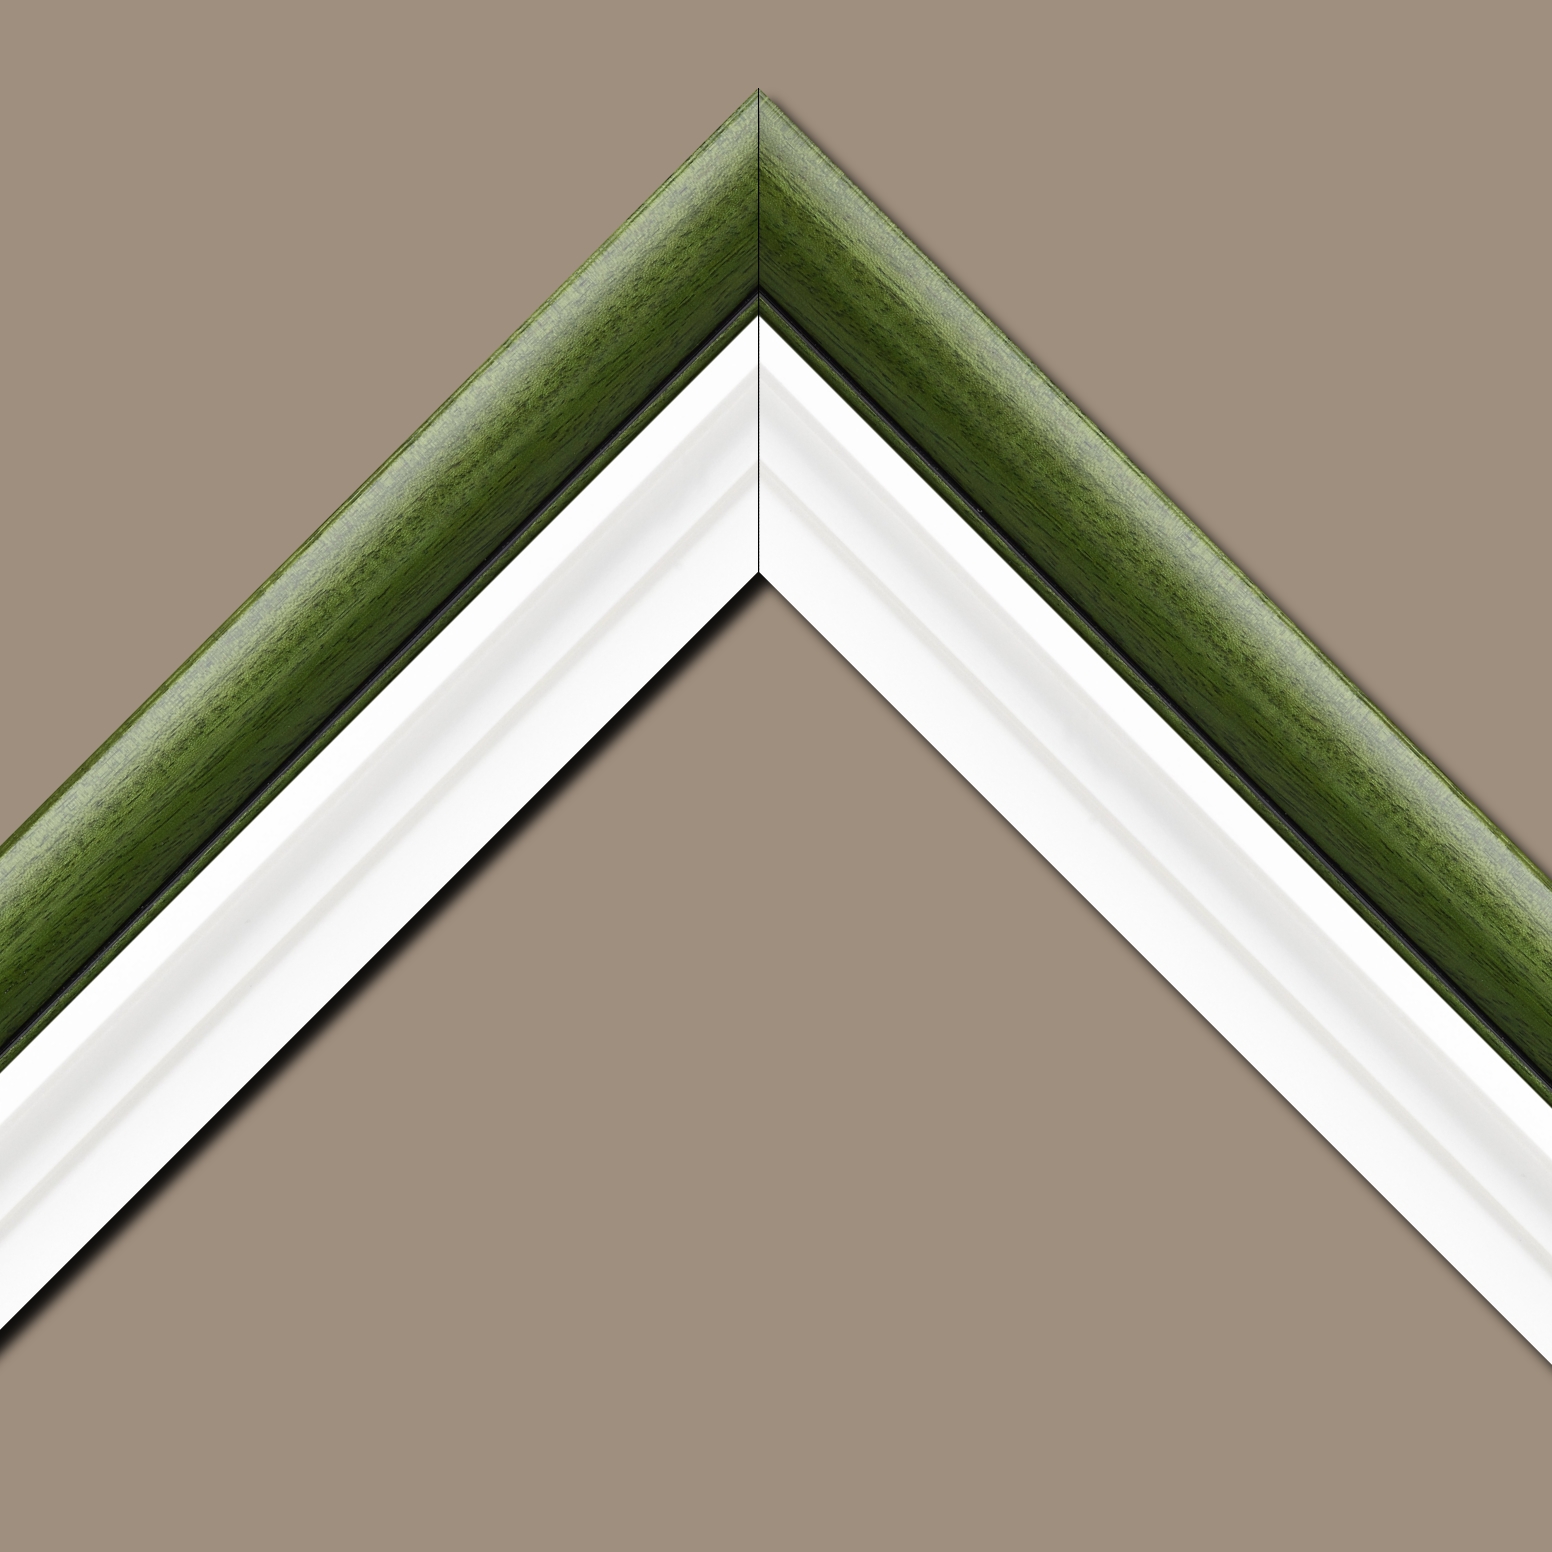 Caisse américaine pour peintures  americaine bois blanc vert — 30 x 30